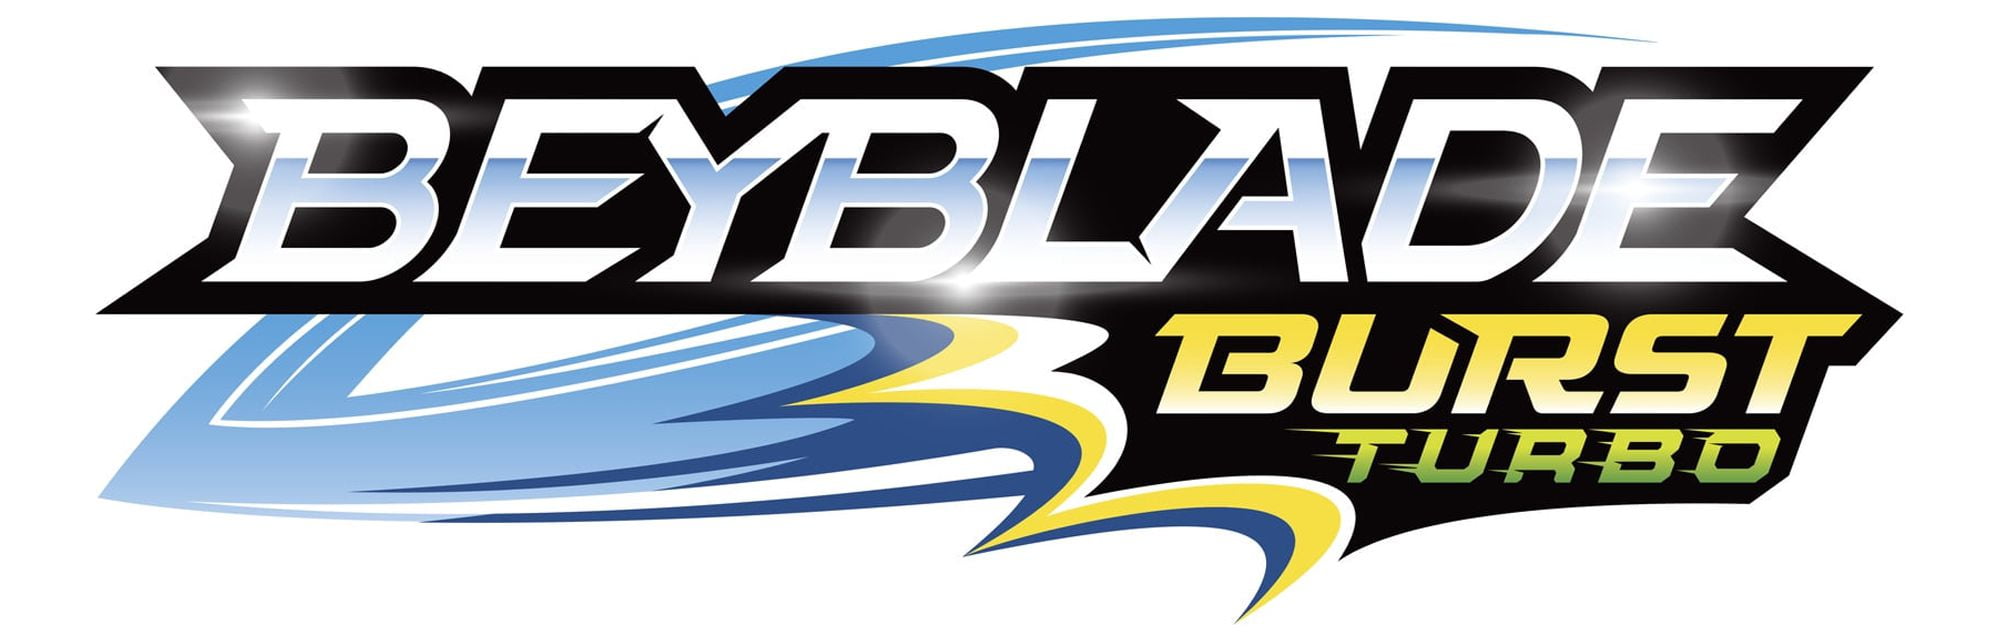 Beyblade Burst Turbo Slingshock - Kit de Batalha Rail Rush - Beyblade